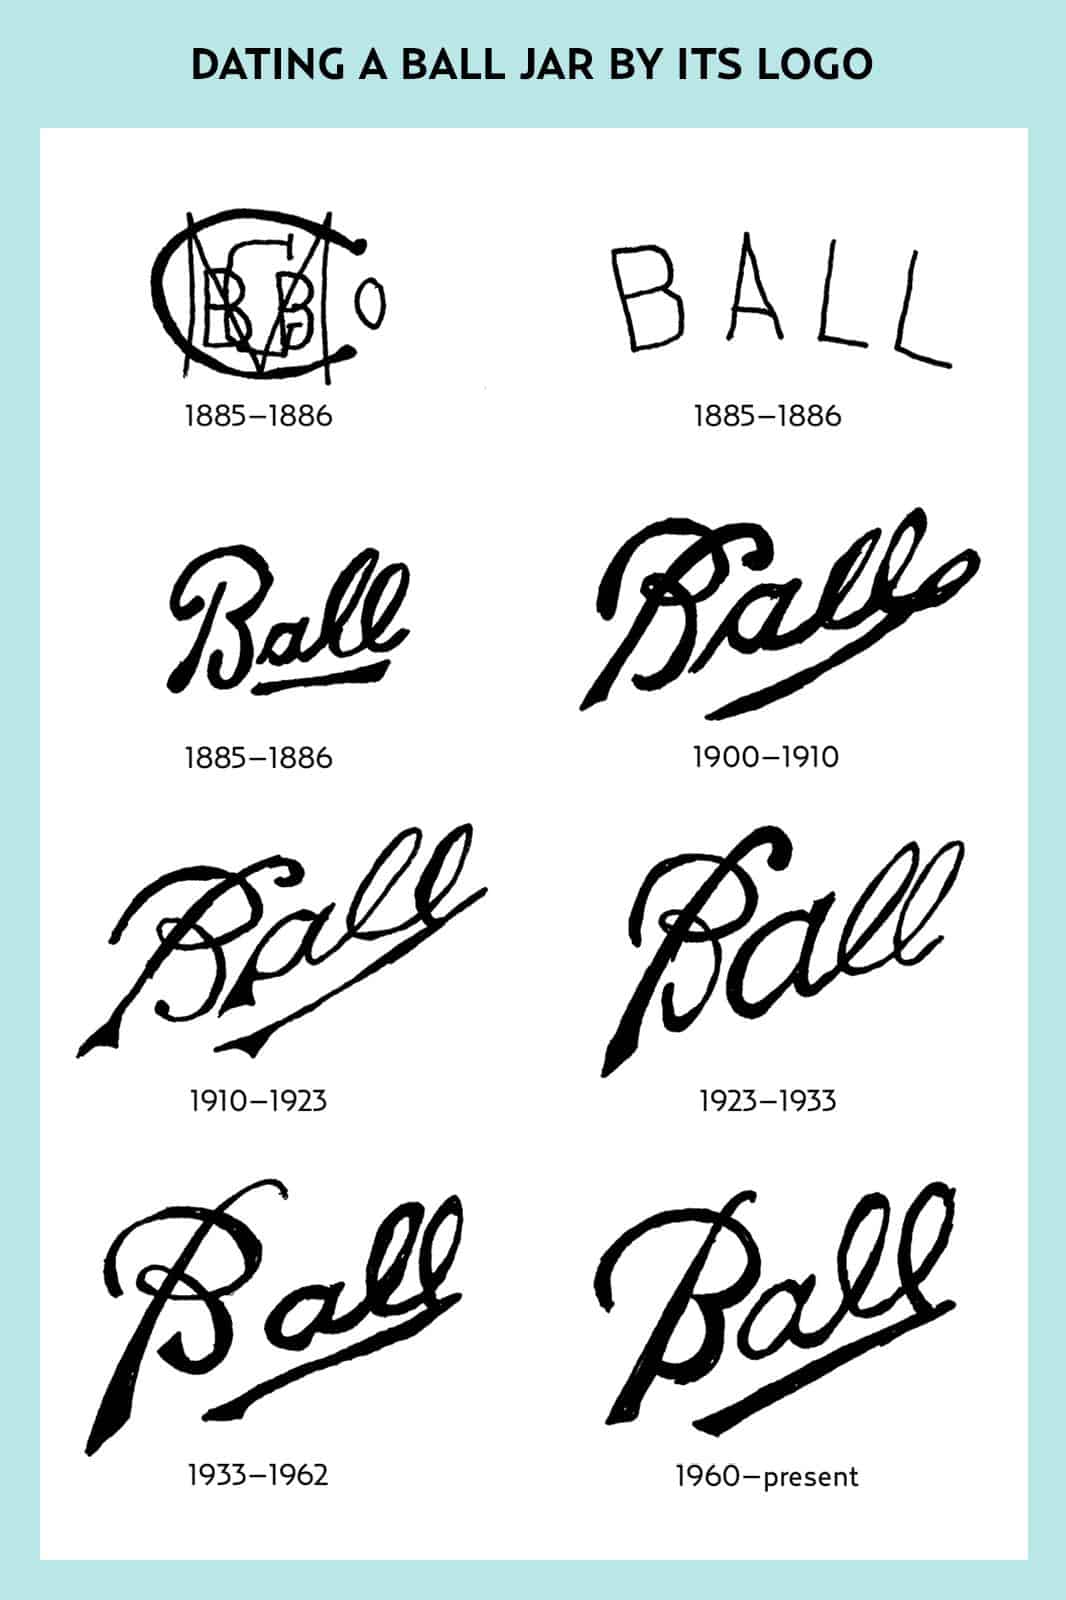 Ball jar logos